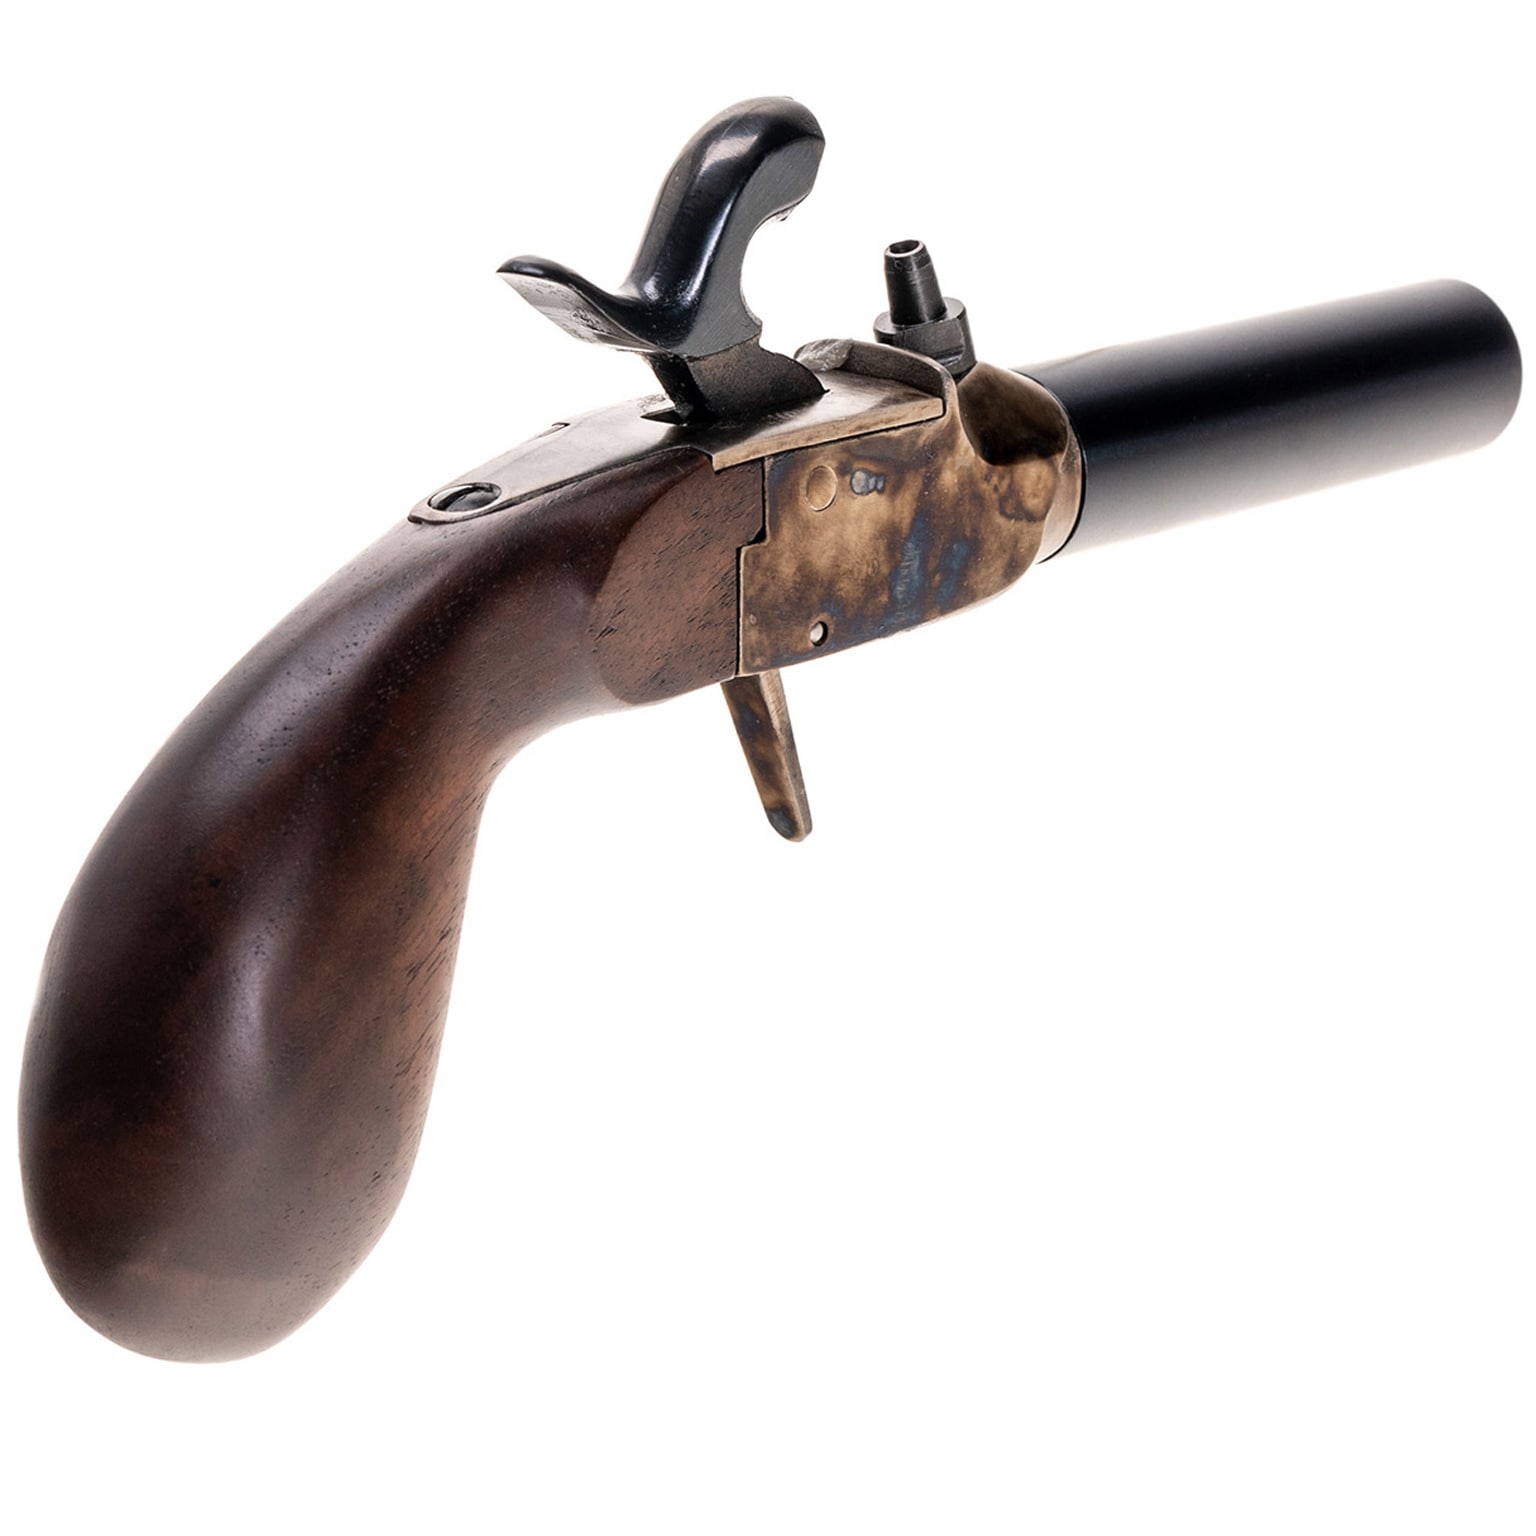 Pistolet czarnoprochowy Pedersoli Derringer Liegi .44